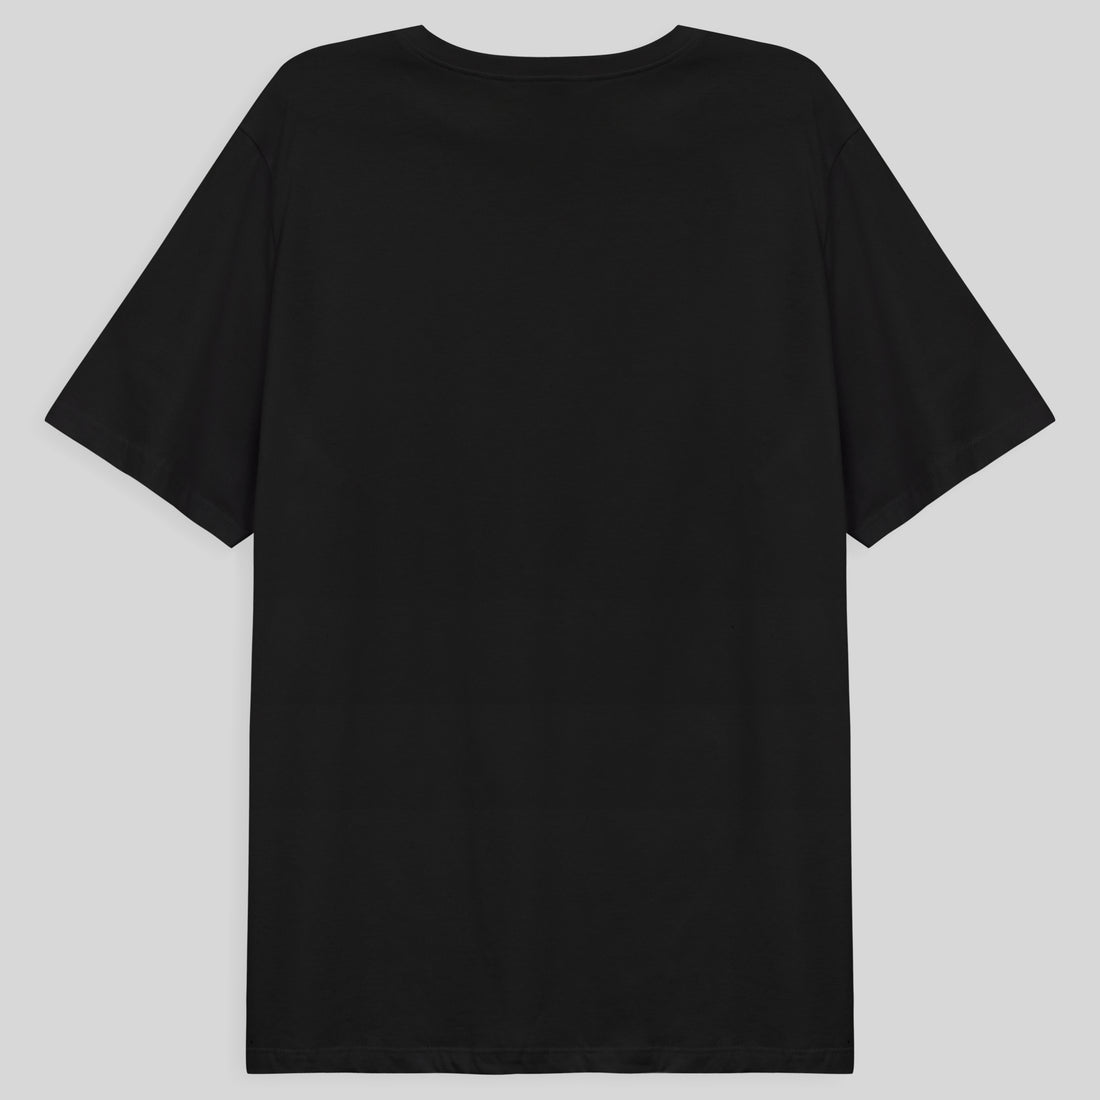 Tech T-Shirt Proteção UV Gola V Plus Size Masculina - Preto